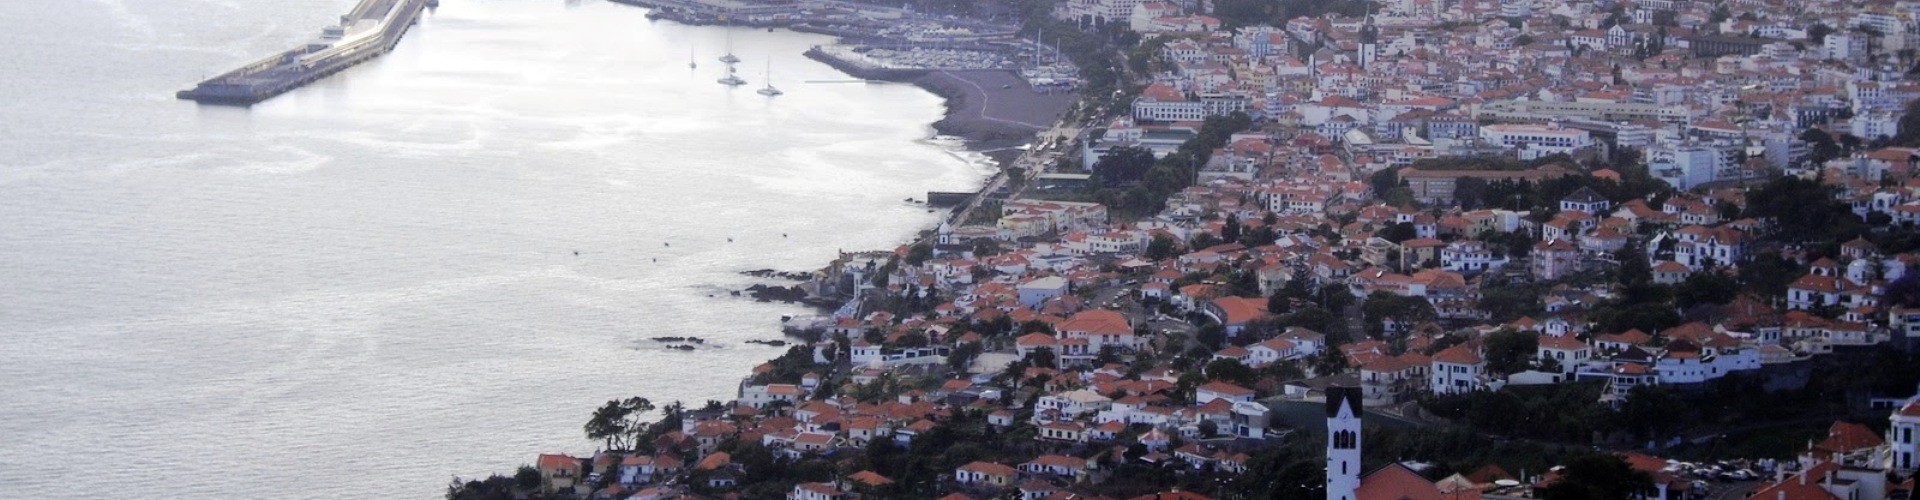 Miradouro das Neves Viewpoint, Sao Gonçalo, Funchal, Madeira